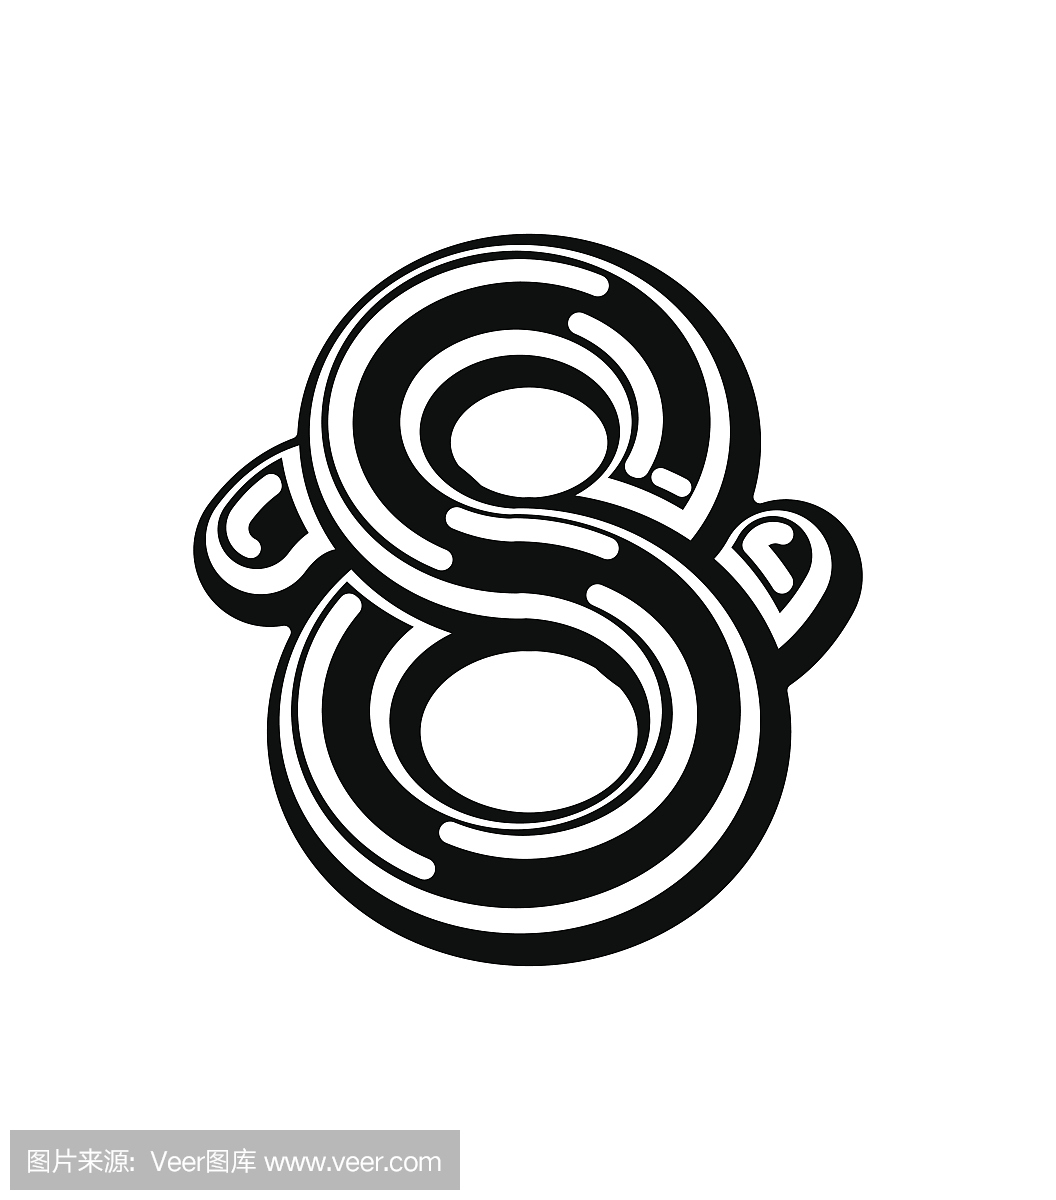 8号凯尔特人字体。中世纪装饰品ABC标志八。